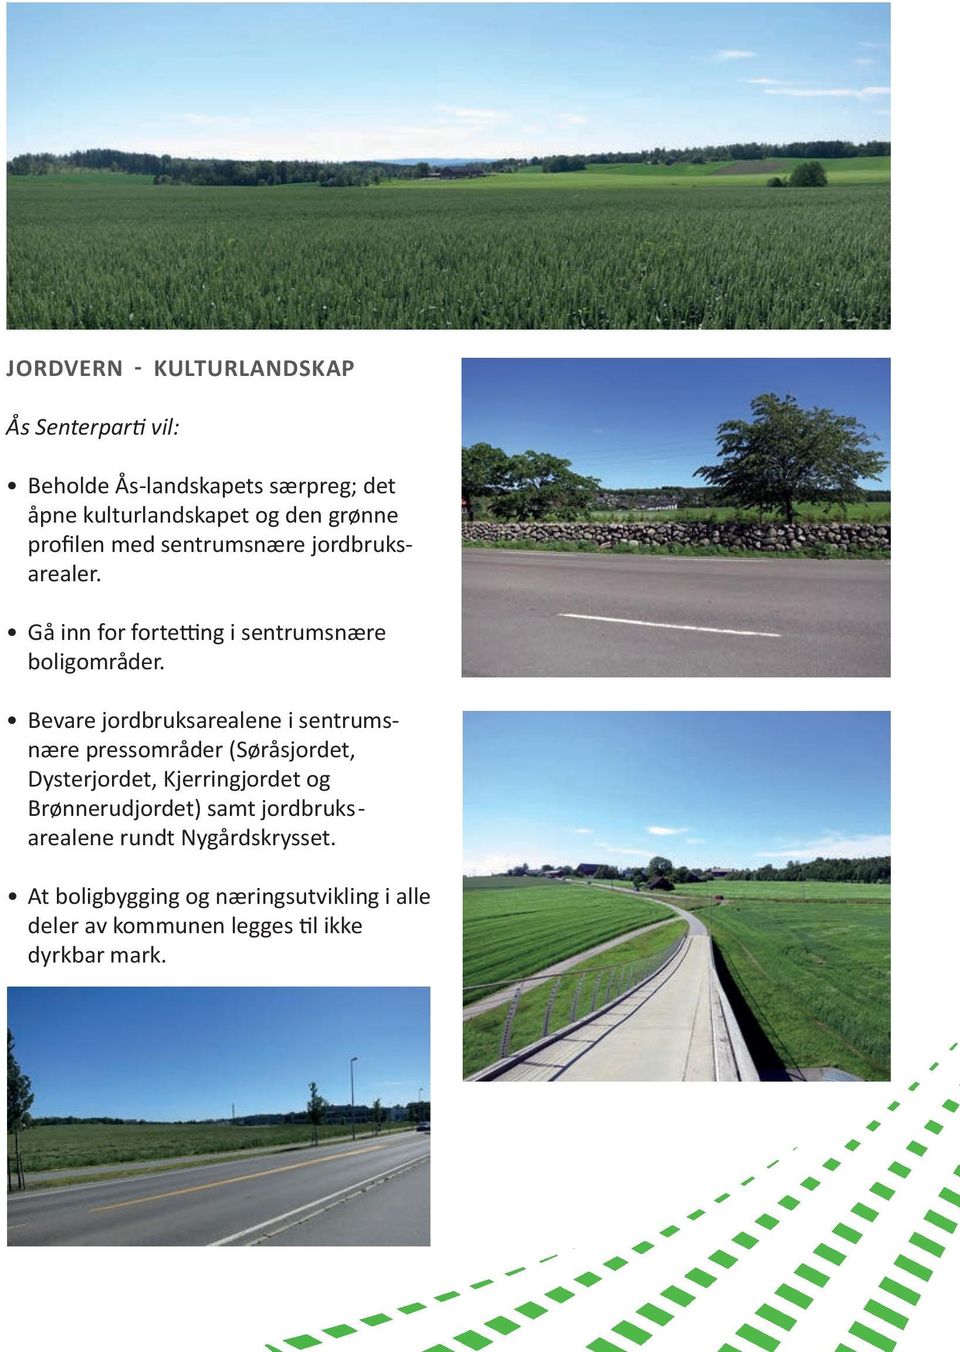 Bevare jordbruksarealene i sentrumsnære pressområder (Søråsjordet, Dysterjordet, Kjerringjordet og